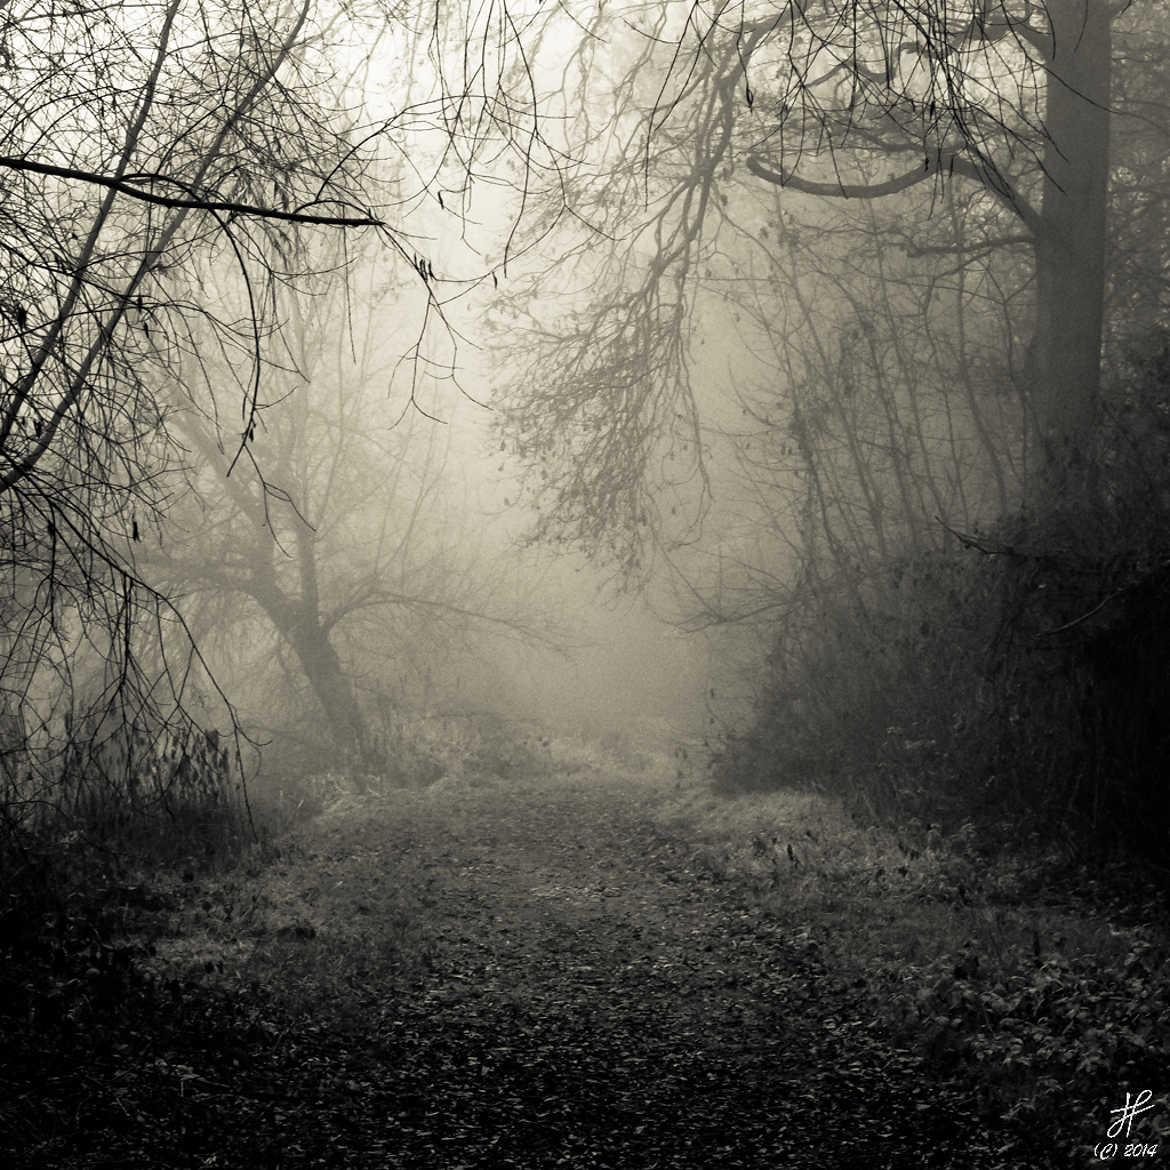 Concours Photo - Automne 2014 - Dans le brouillard par Jacky67